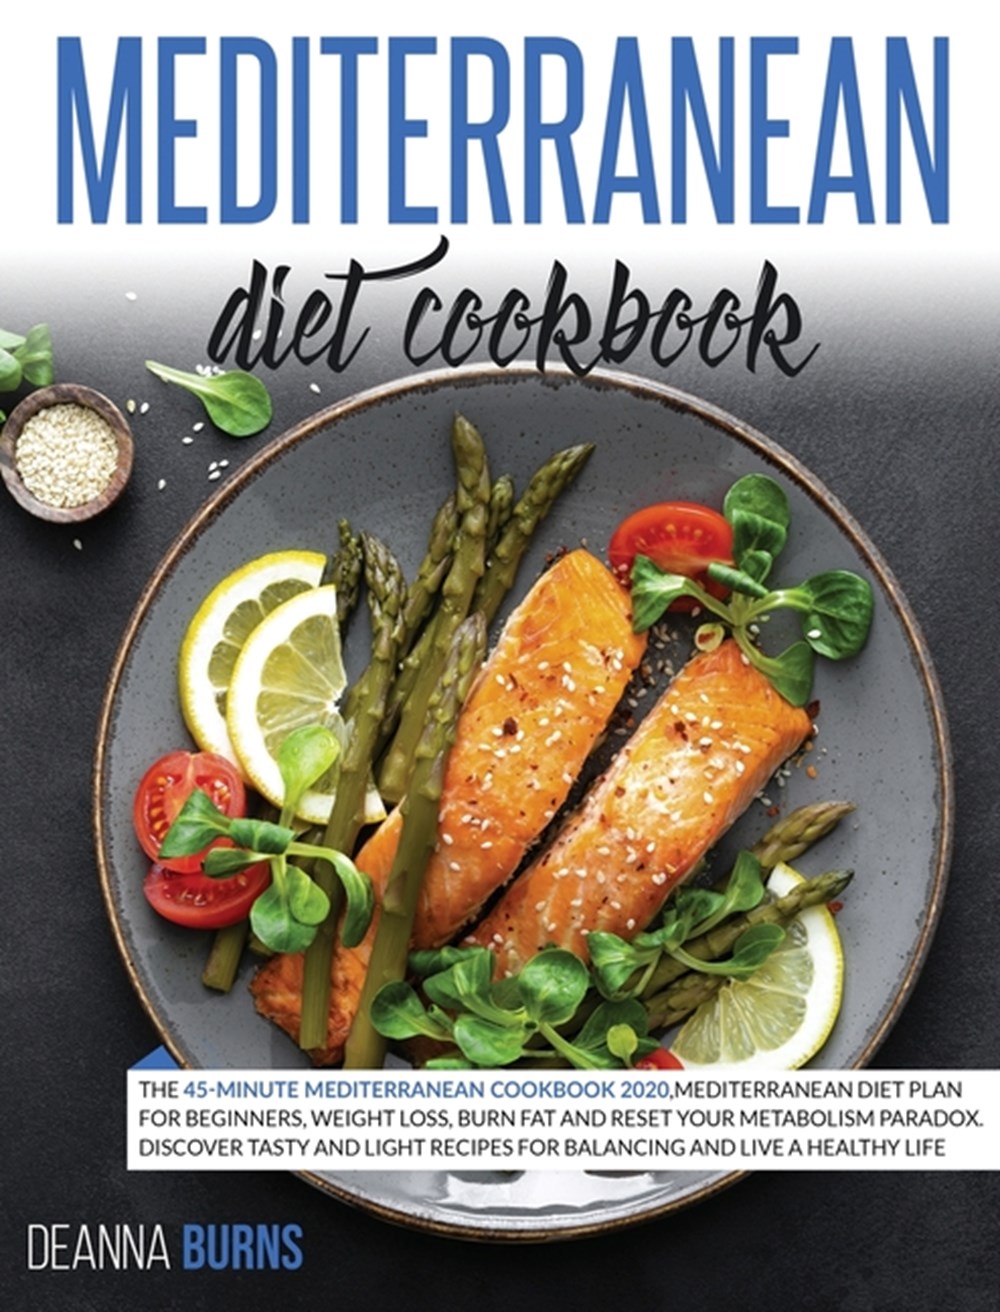 Mediterranean Diet Cookbook: The 45-Minute Mediterranean Cookbook 2020, Mediterranean Diet Plan for 